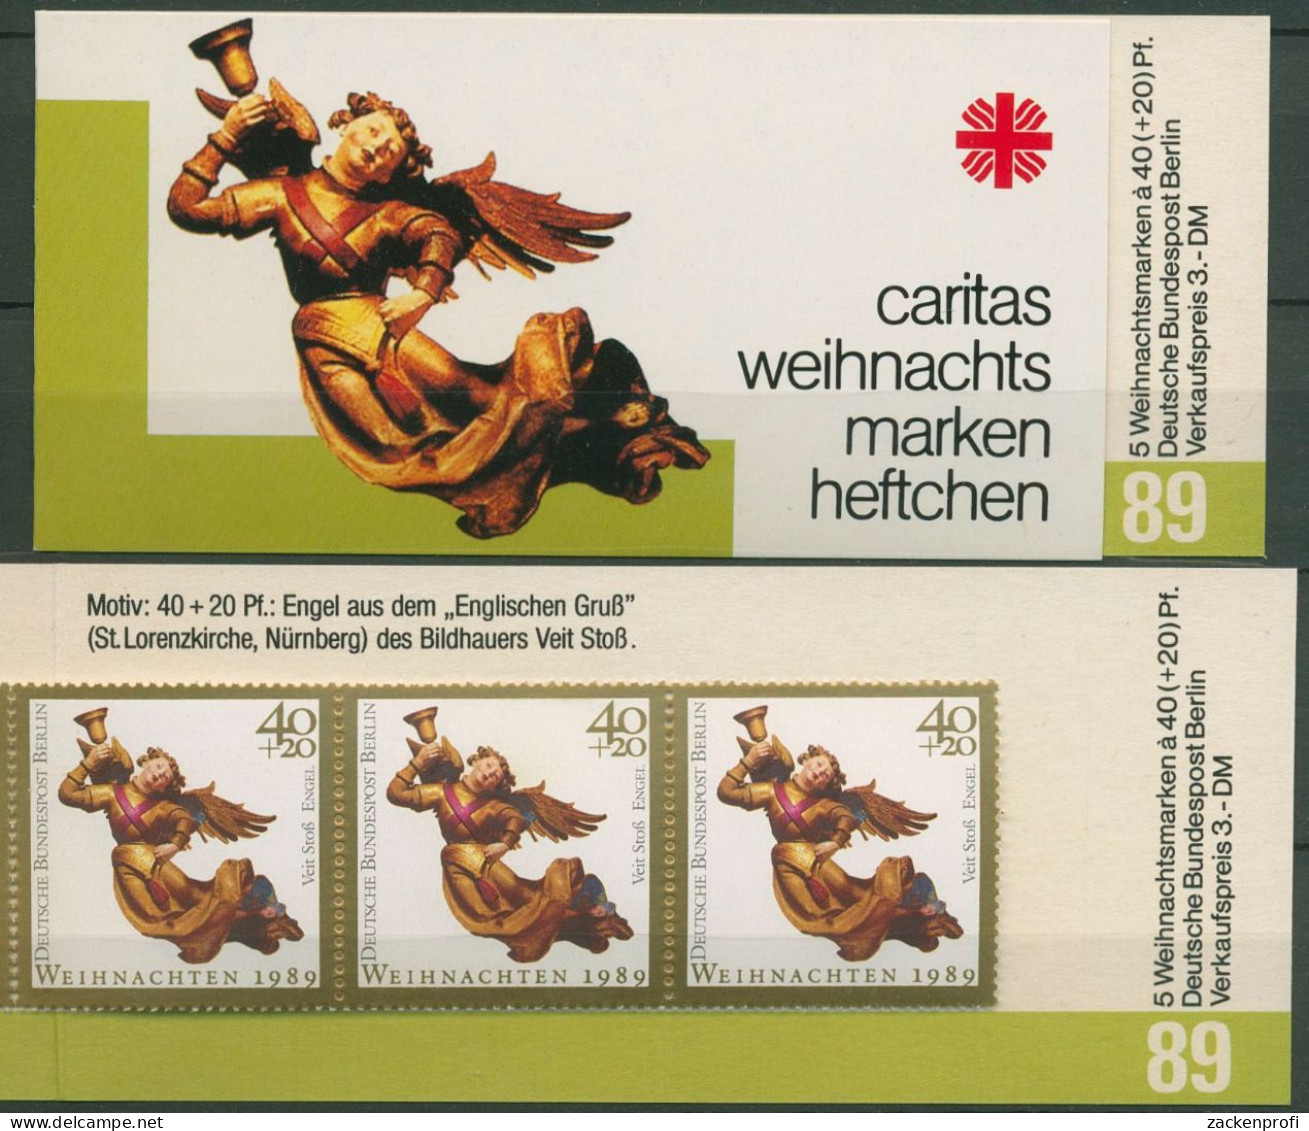 Berlin Caritas 1989 Weihnachten Markenheftchen (858) MH W 7 Postfrisch (C60249) - Markenheftchen